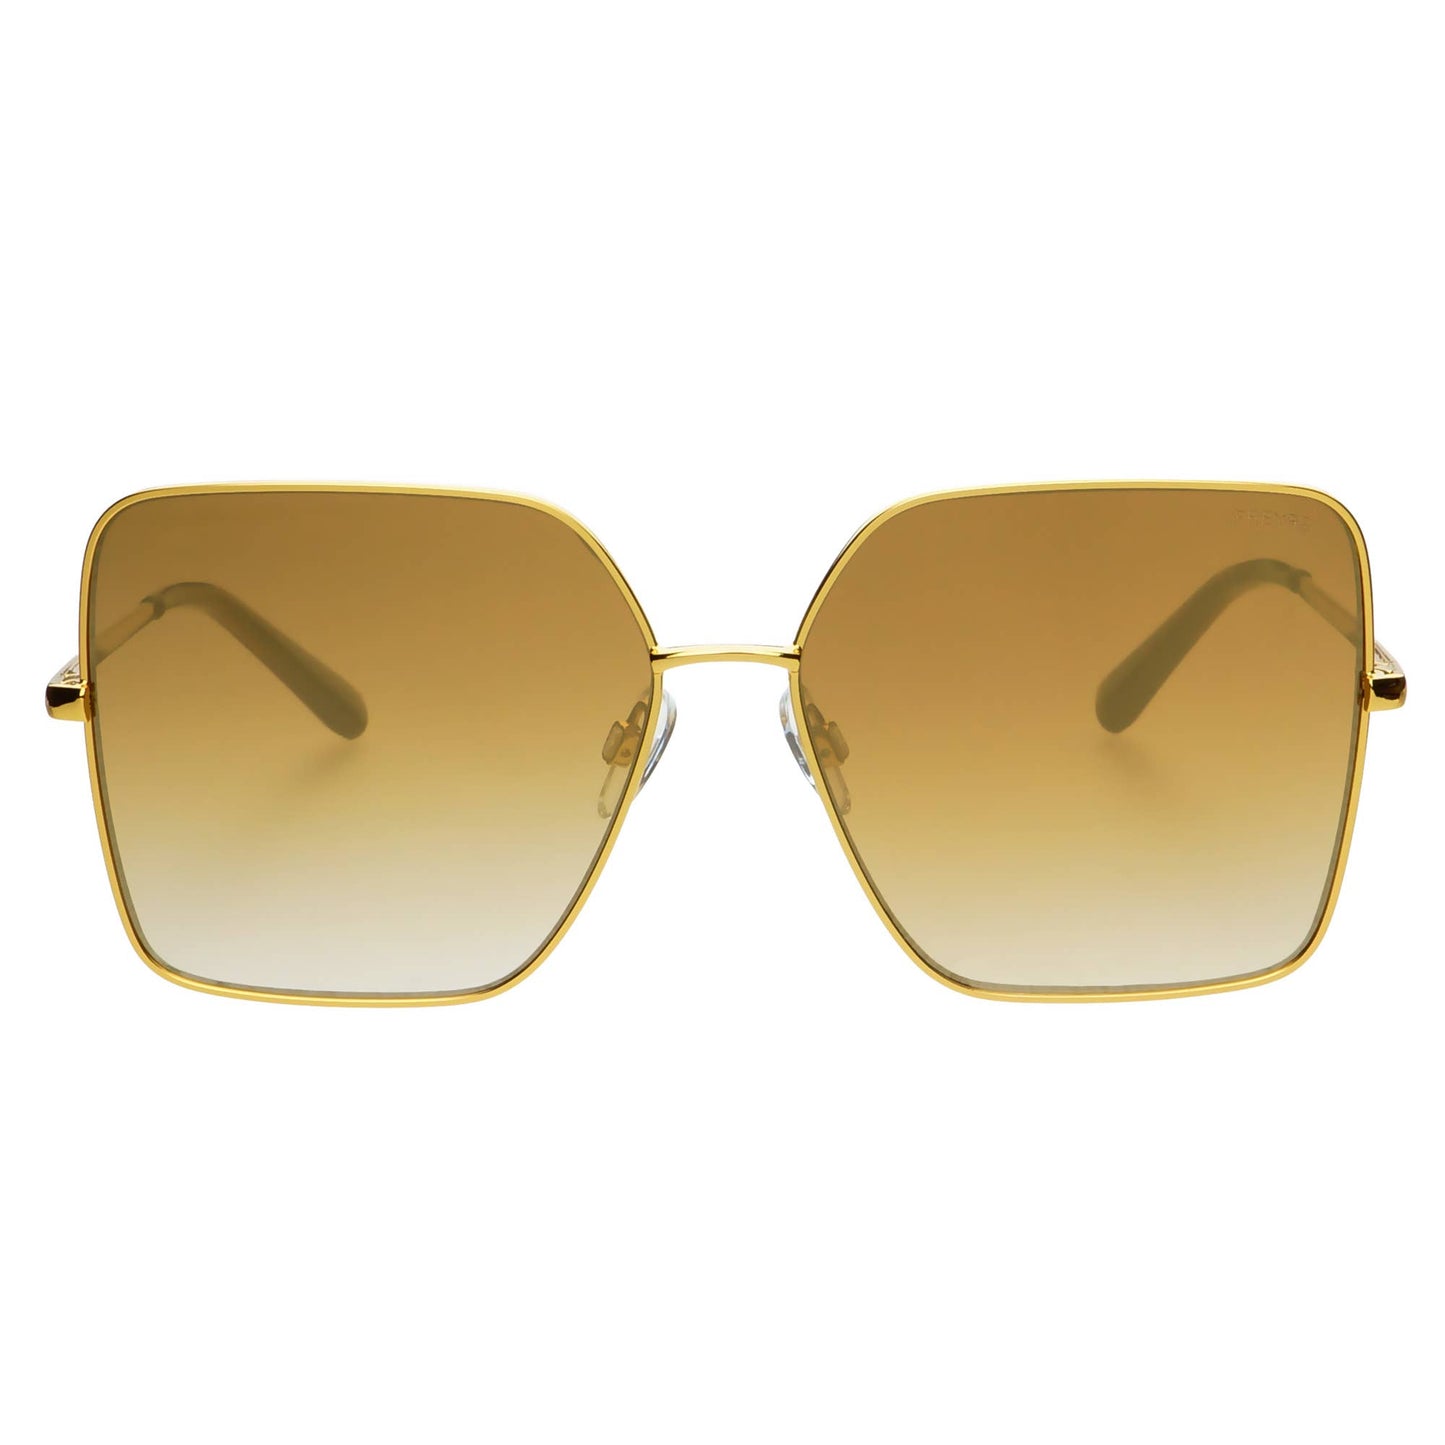 Dream Girl Womens Sunglasses: Gold Mirrored